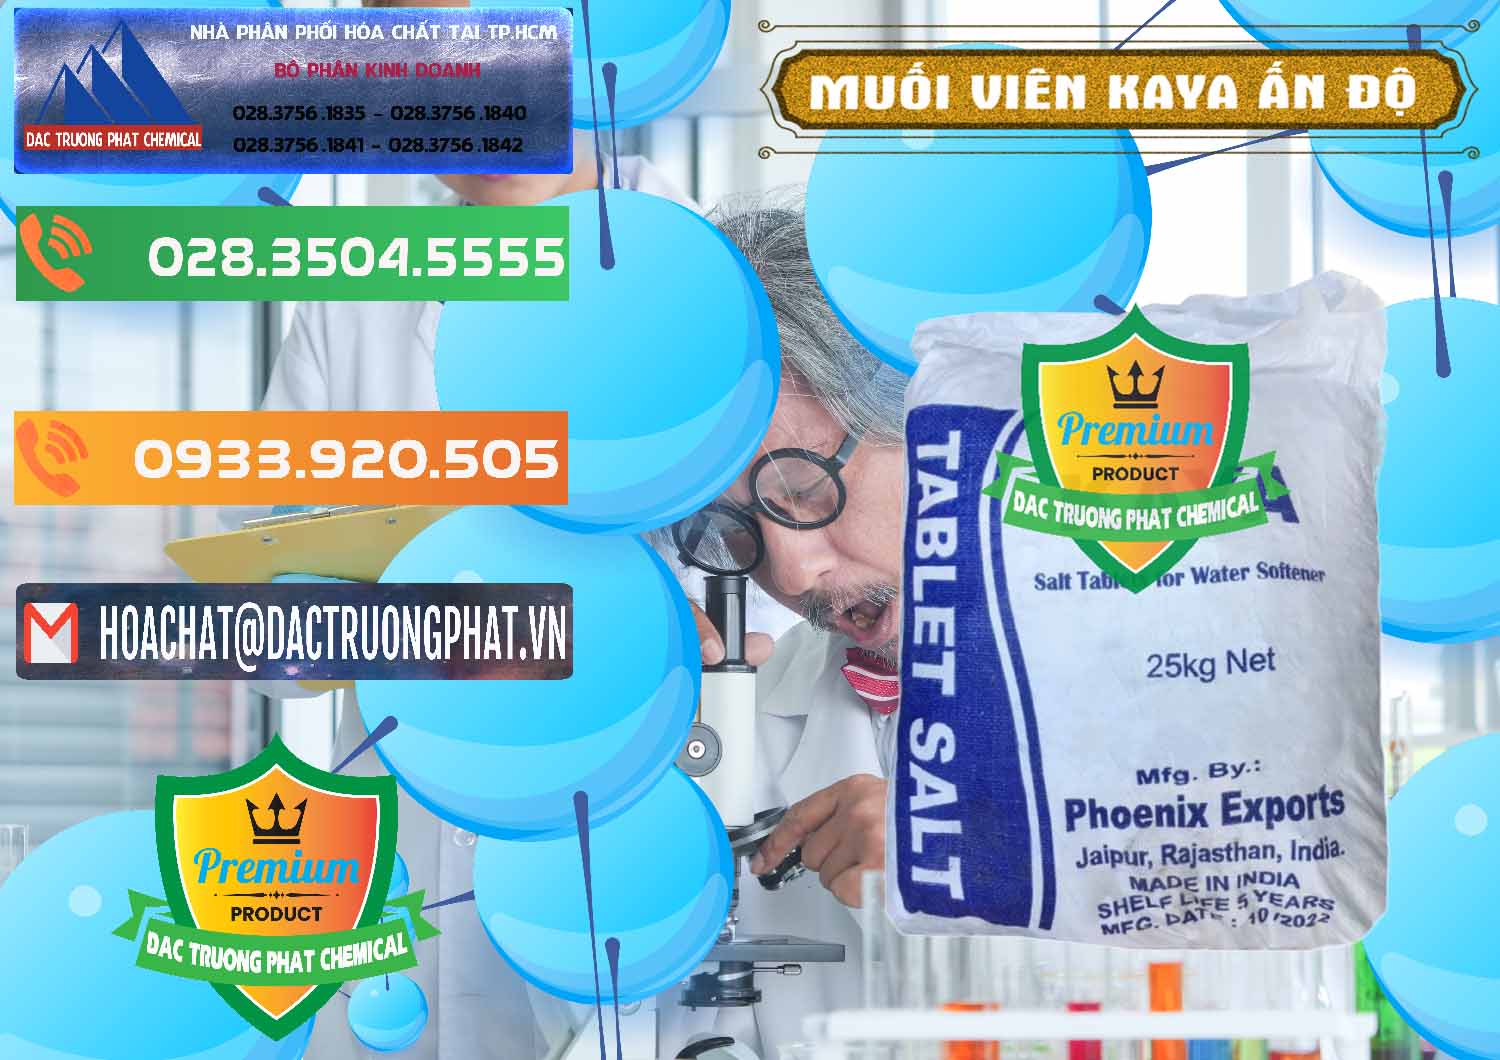 Cty chuyên phân phối - bán Muối NaCL – Sodium Chloride Dạng Viên Tablets Kaya Ấn Độ India - 0368 - Đơn vị chuyên cung cấp và nhập khẩu hóa chất tại TP.HCM - hoachatxulynuoc.com.vn